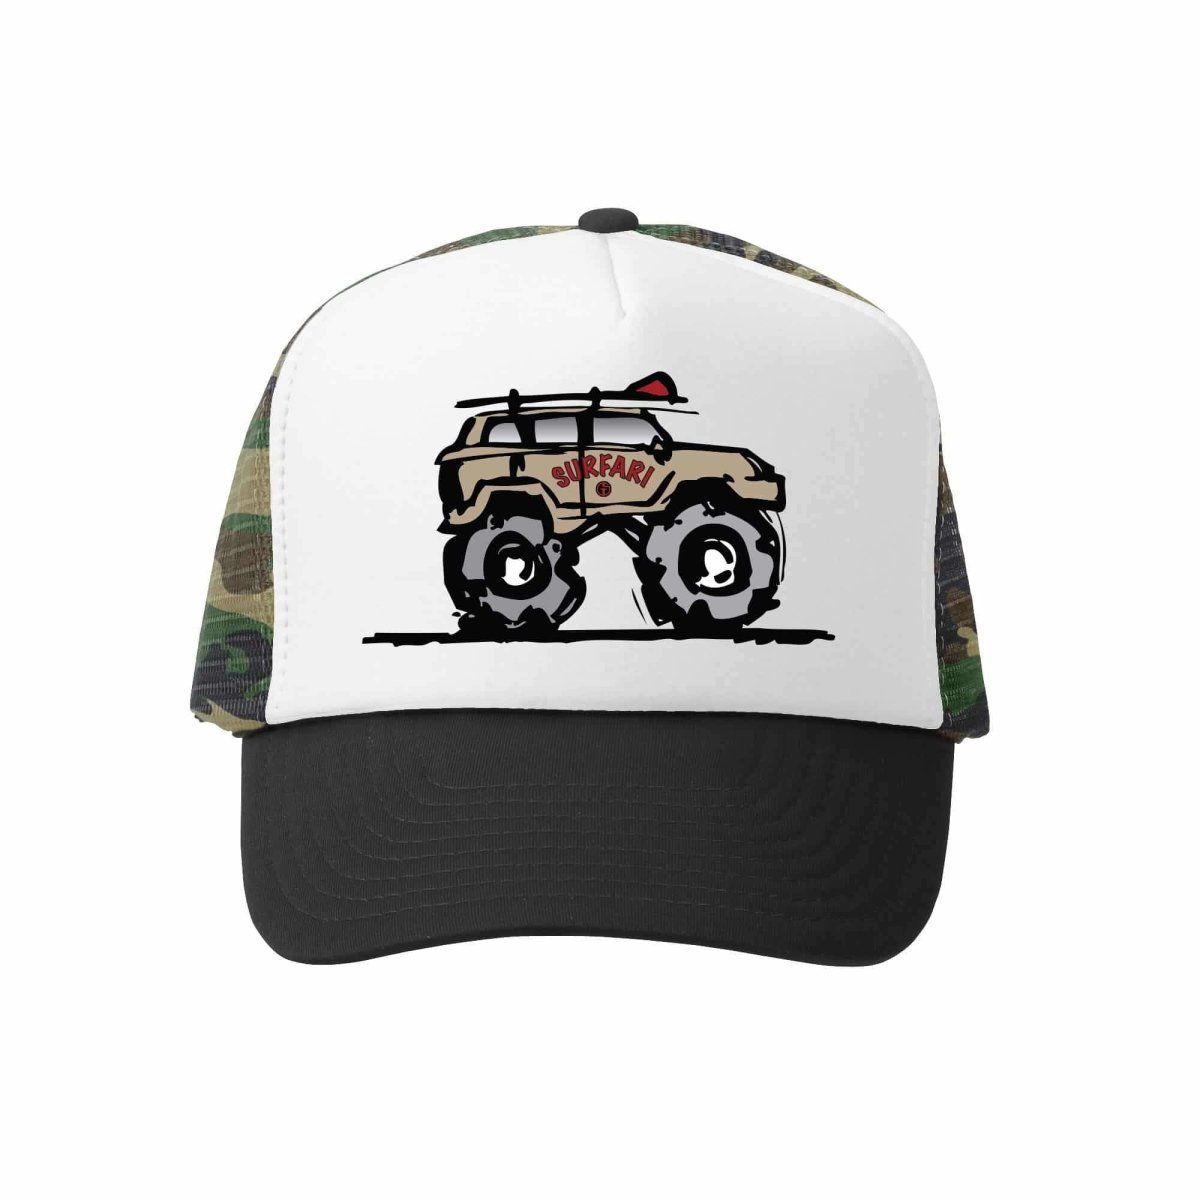 SAFARI CAMO TRUCKER HAT - HATS